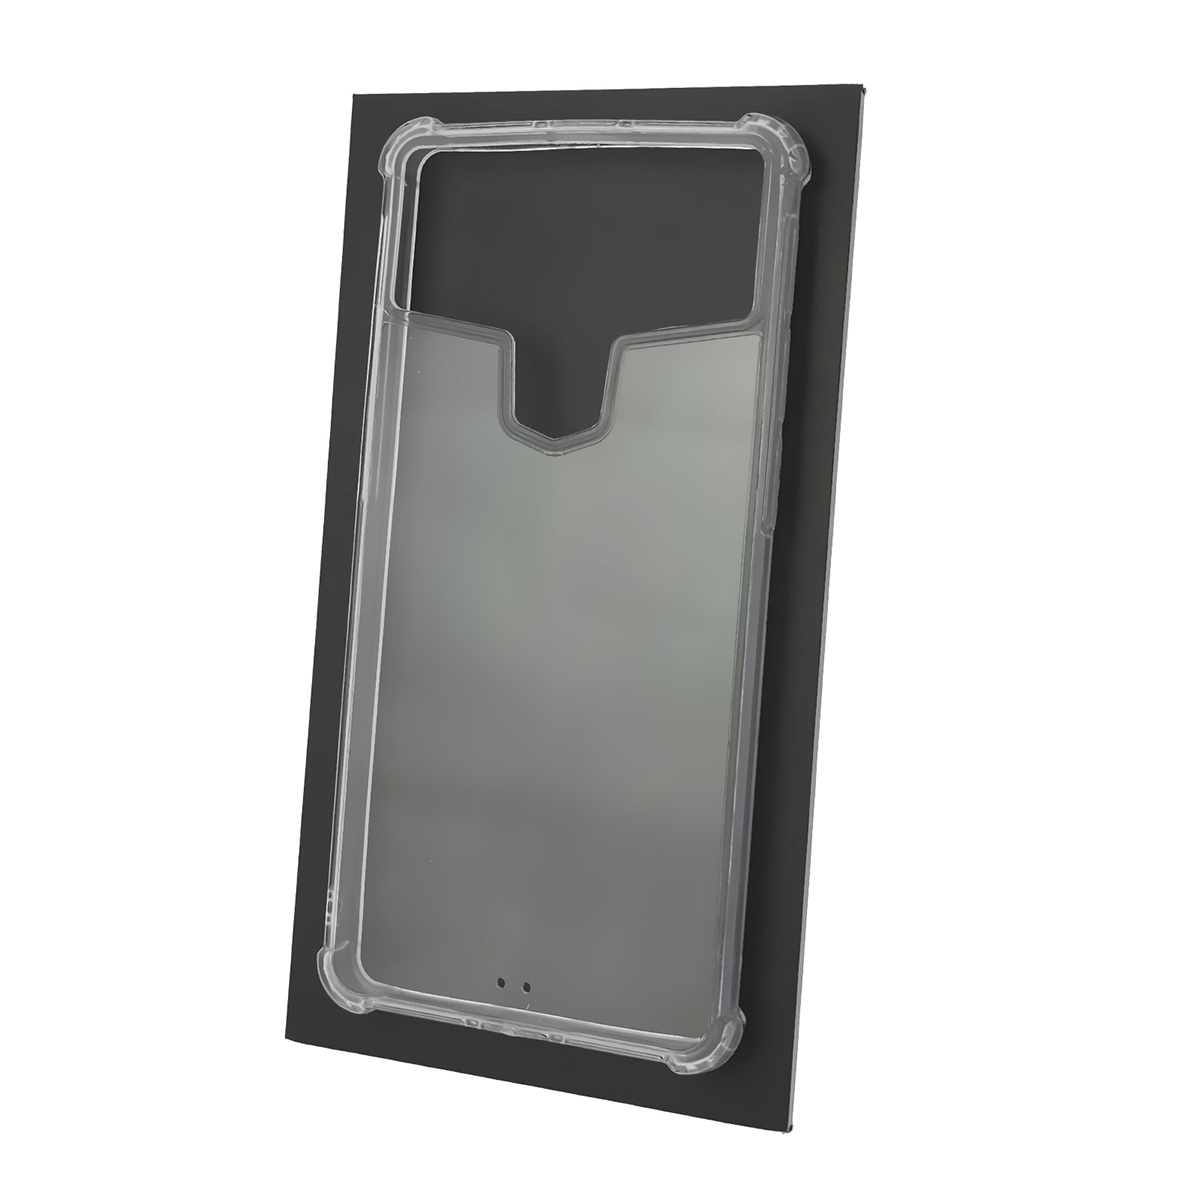 Чехол накладка универсальная TPU CASE для смартфонов размером 6.3 - 6.5, N5, силикон, цвет прозрачный.